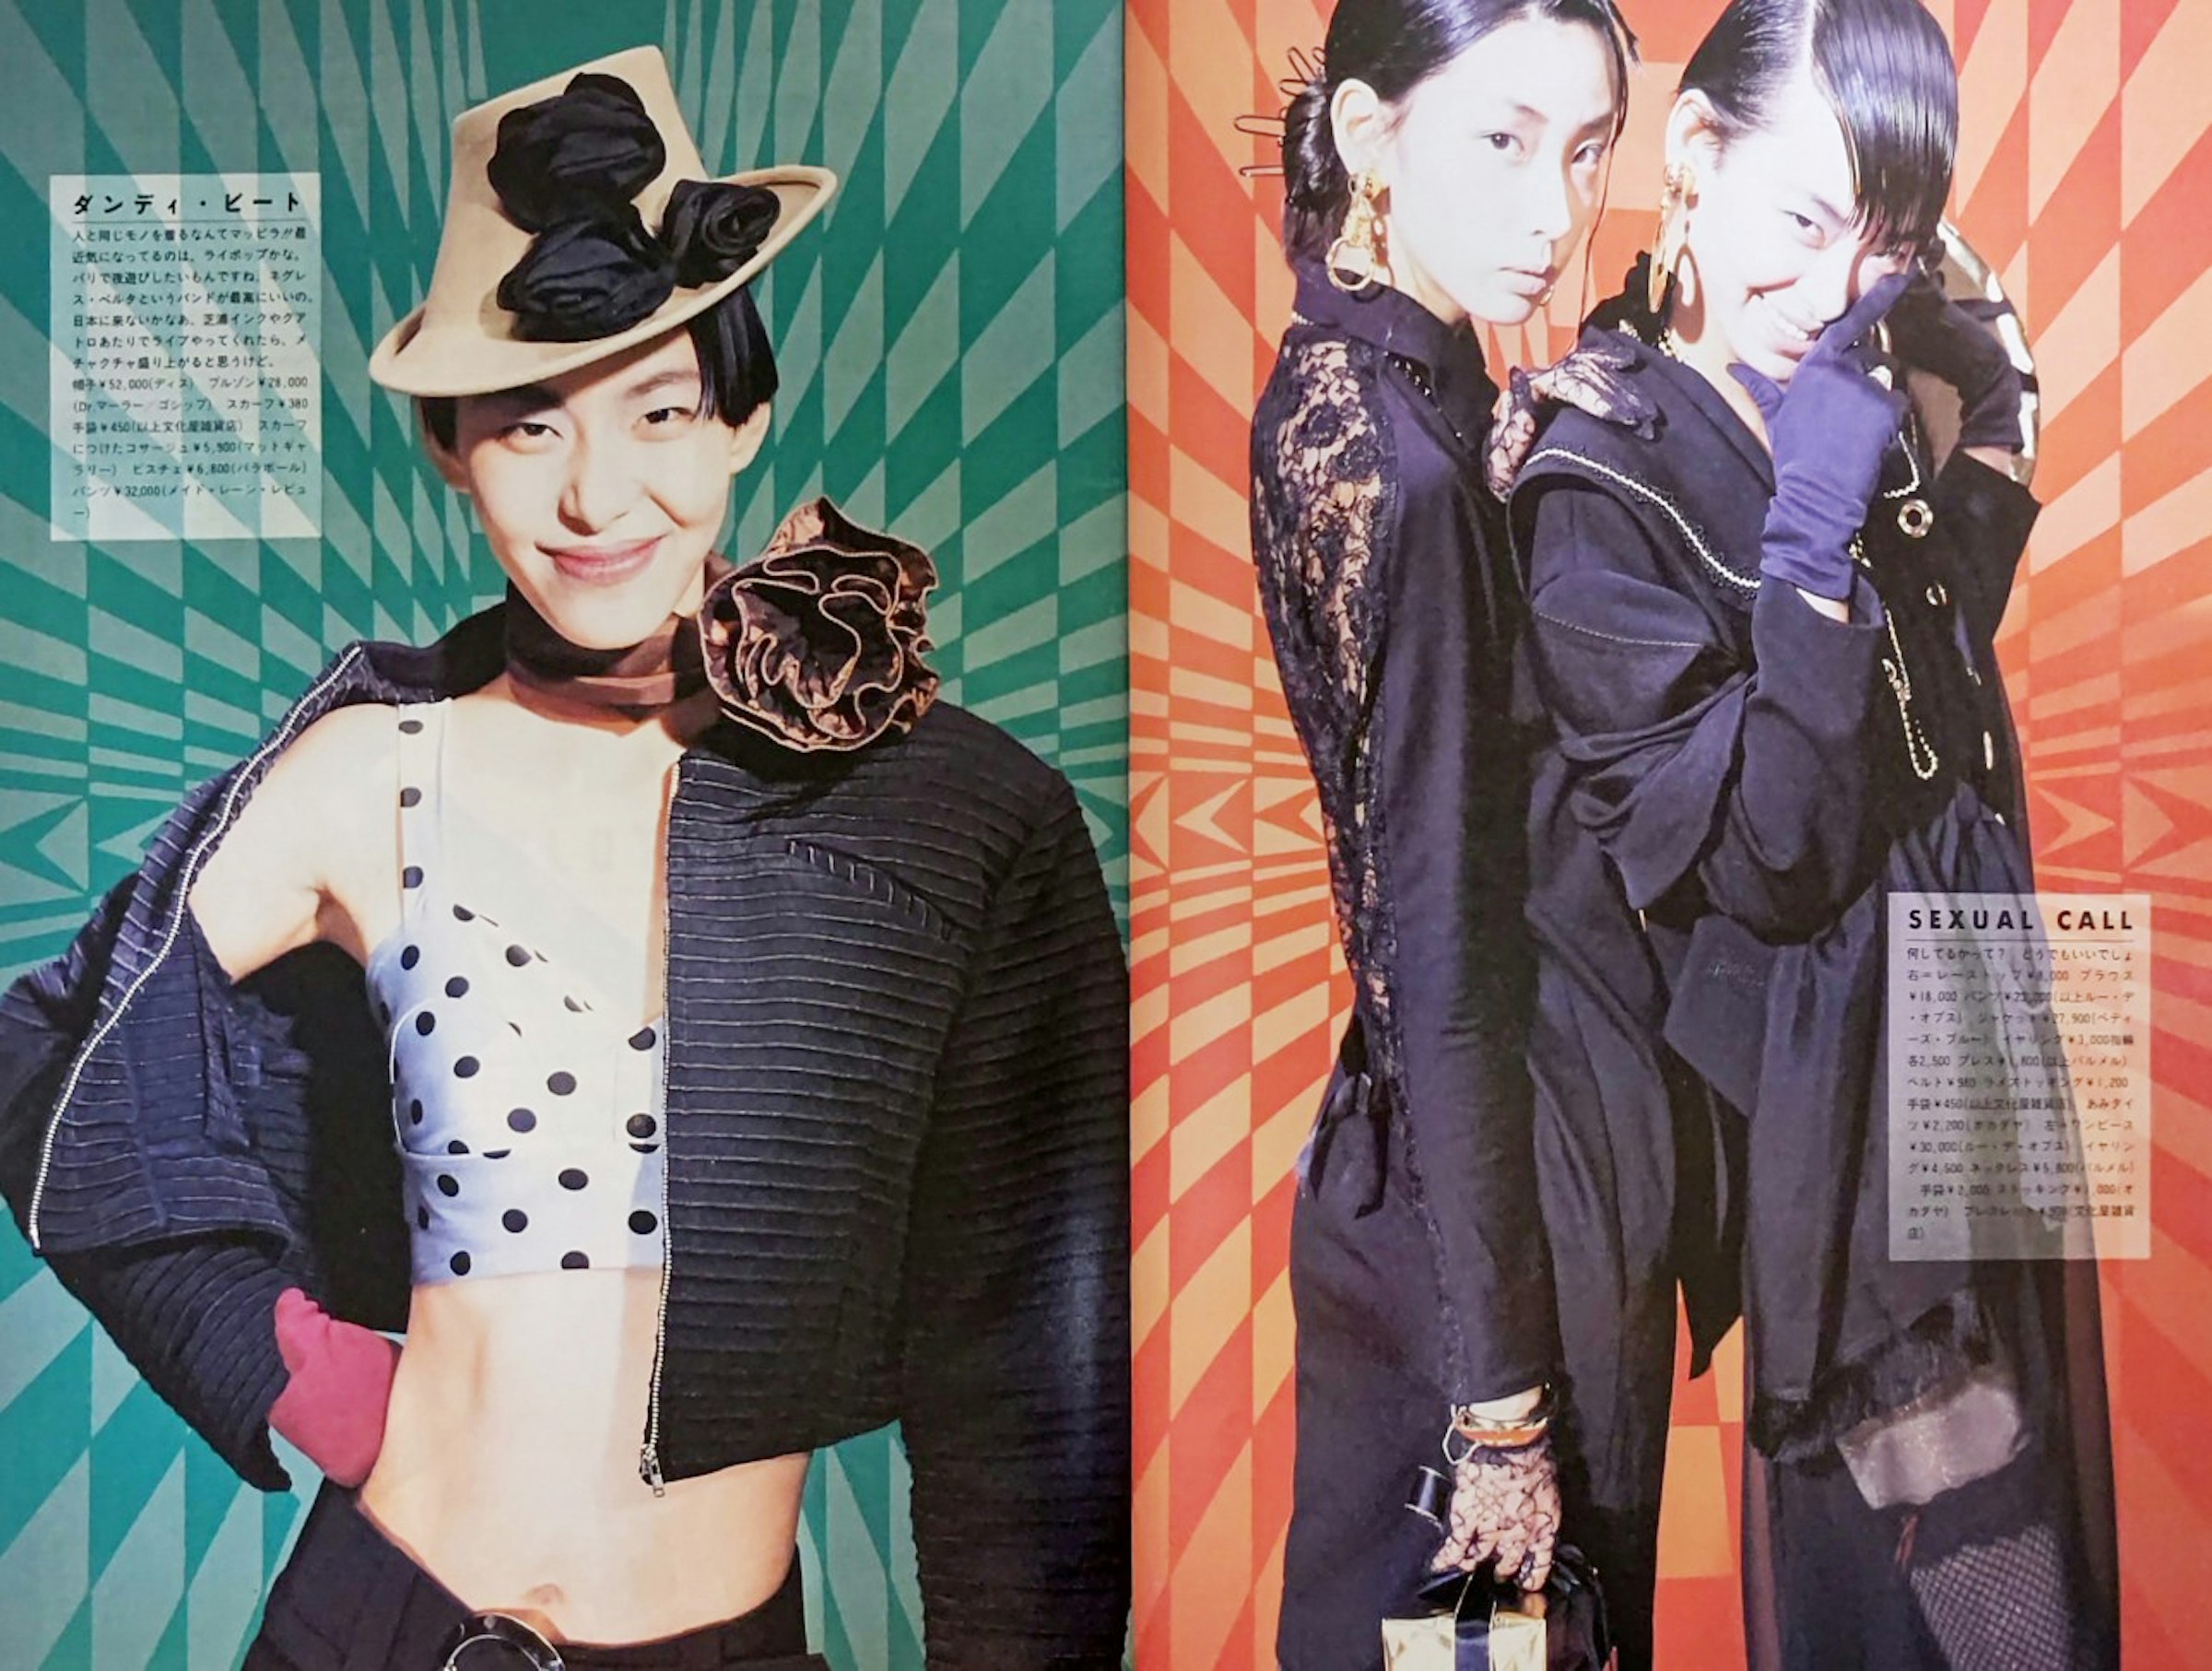  渋谷の店舗はスタイリストの目に留まり、スカーフや手袋などの小物類はファッション雑誌に度々紹介されるようになった（『CUTiE』別冊宝島 VOL.6 /JICC出版局）